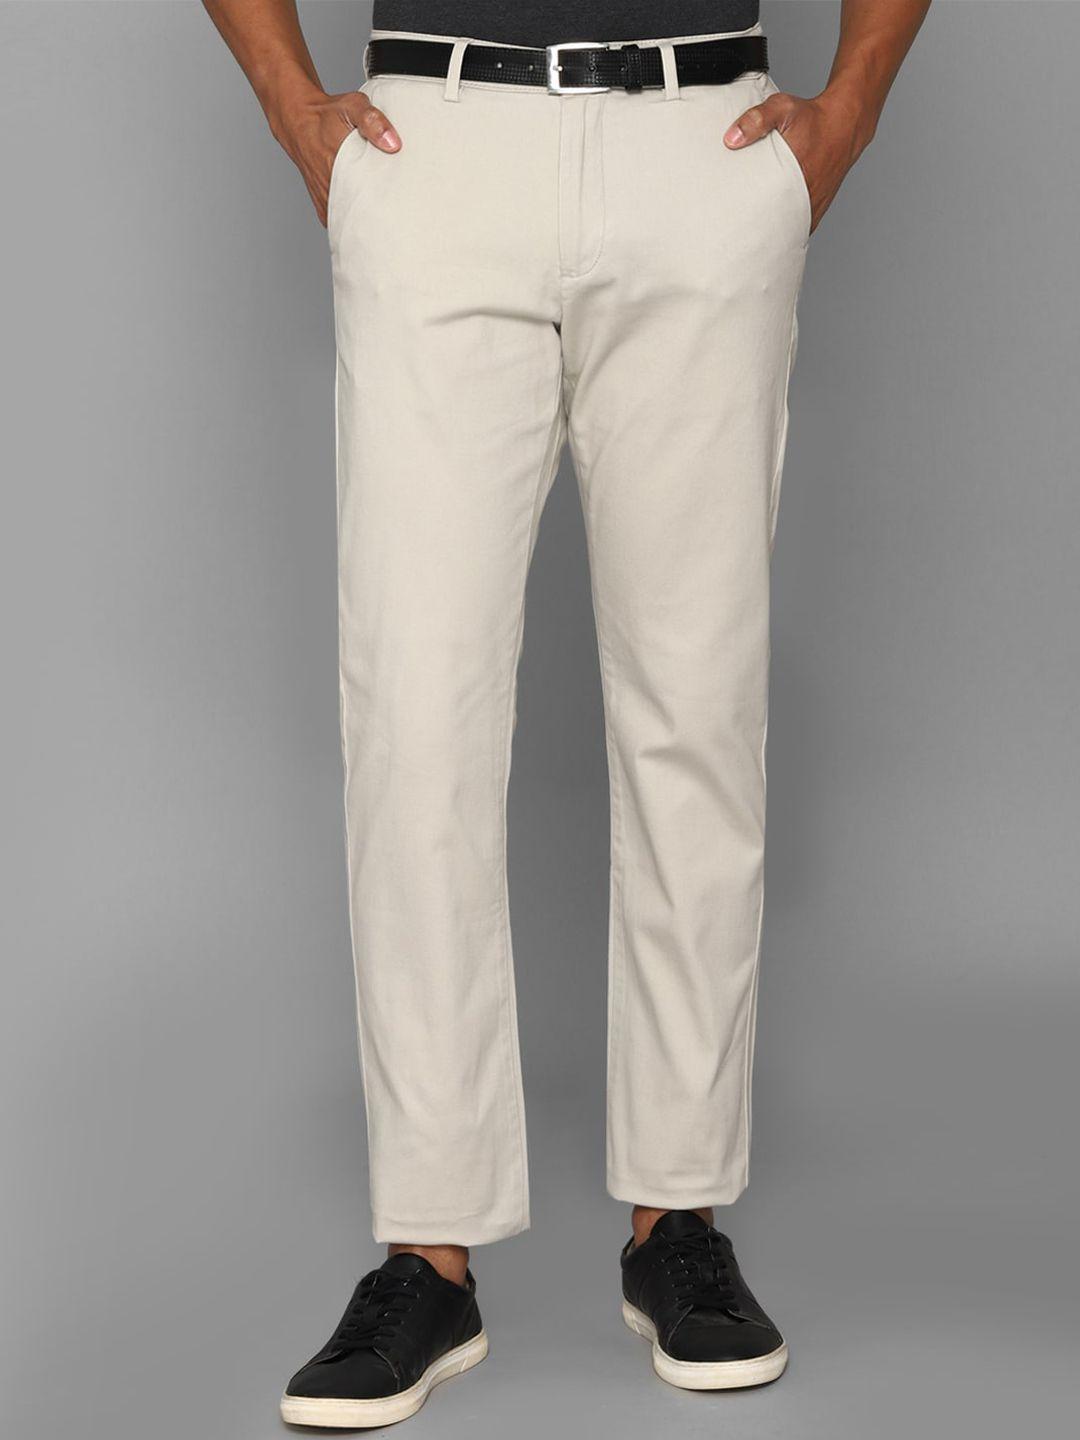 Allen Solly Men Mid-Rise Plain Trousers